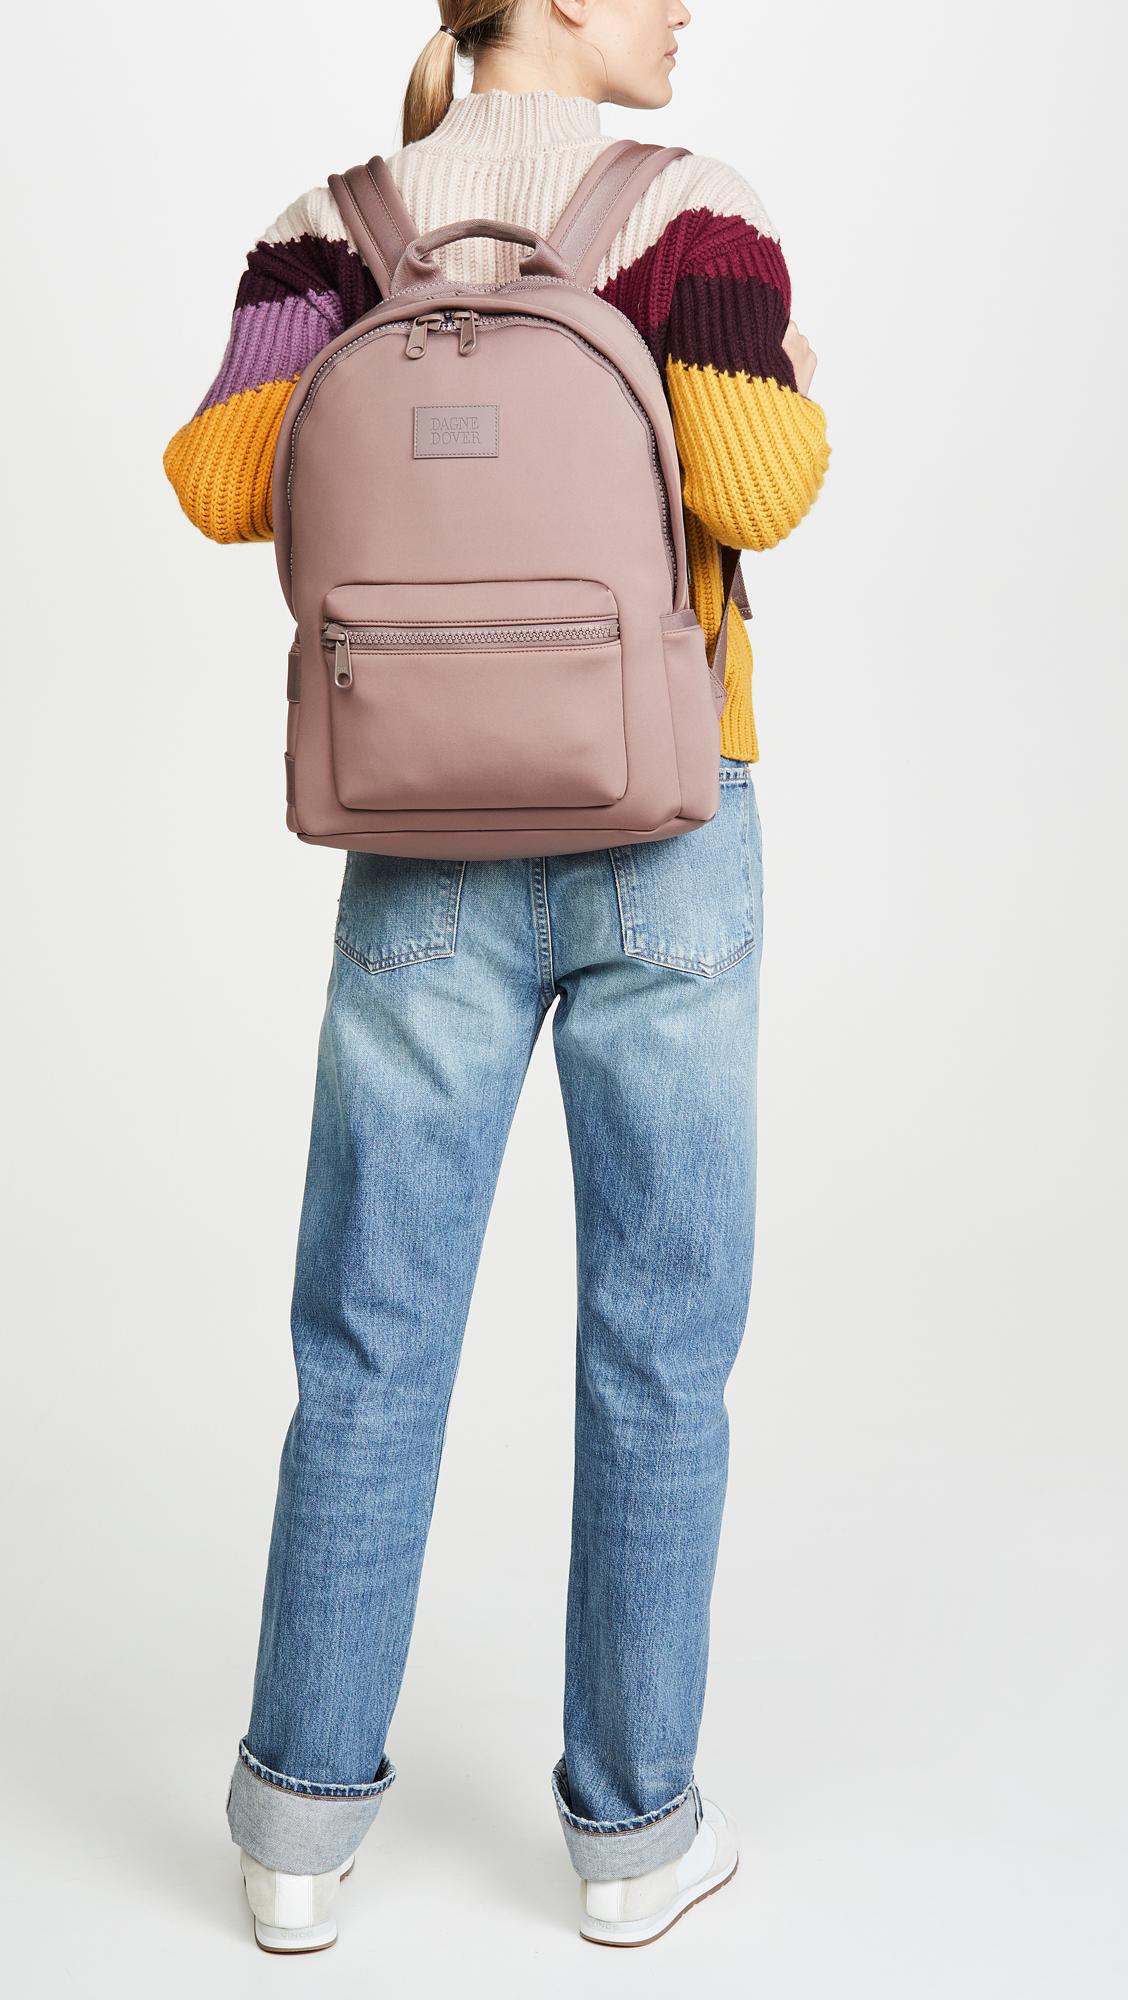 dagne dover dakota backpack colors